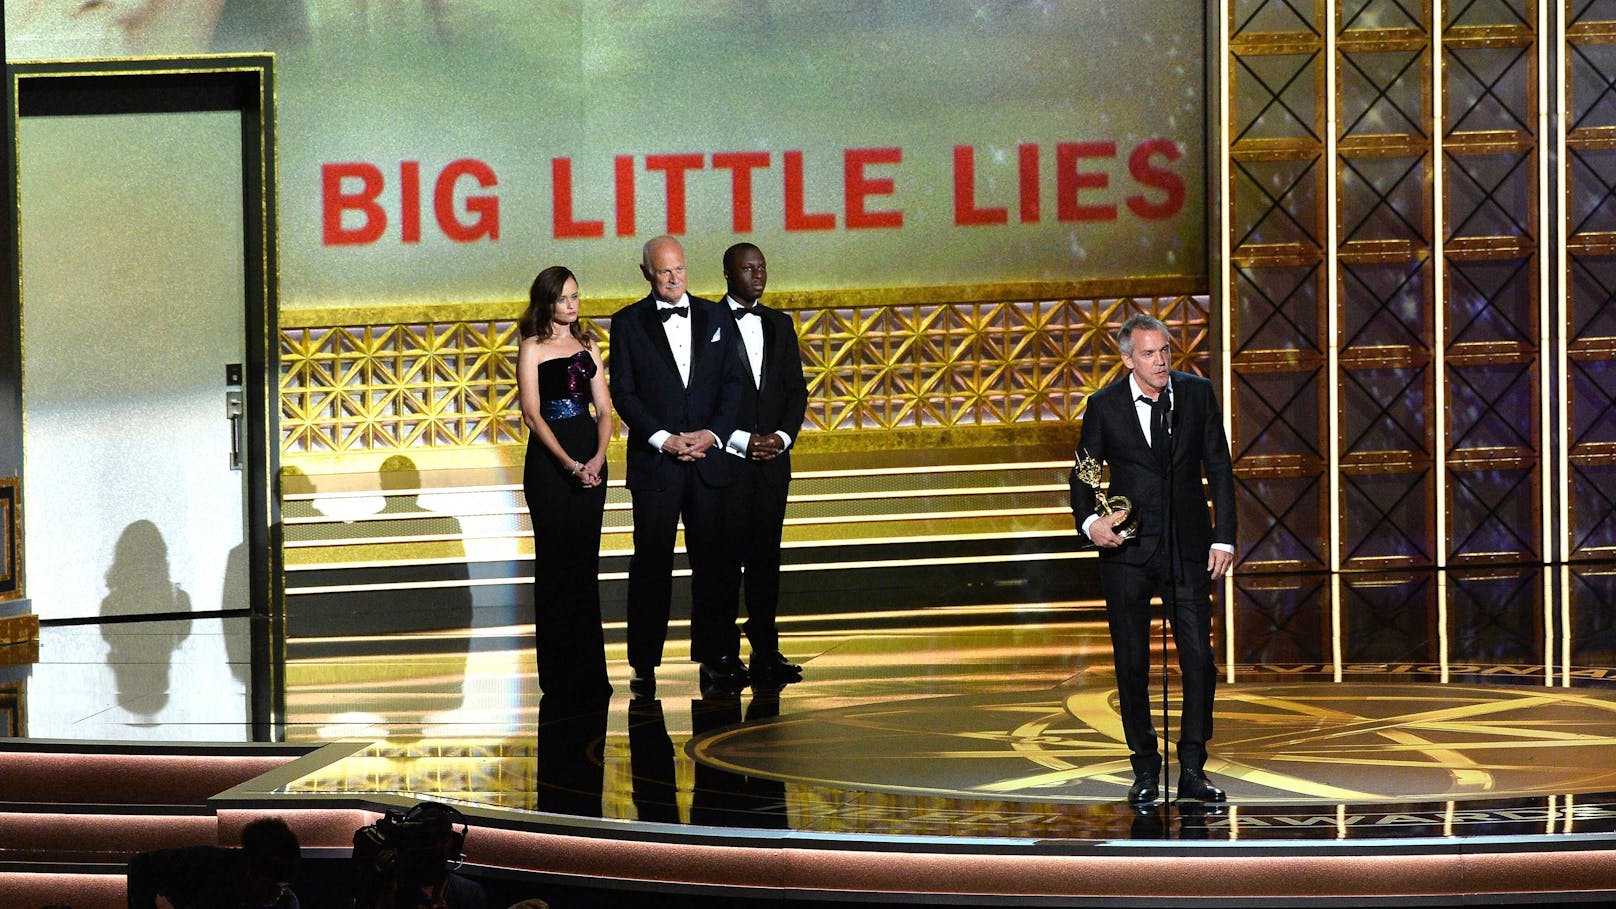 Jean-Marc Vallée erhielt "Big Little Lies" sogar Emmy-Awards